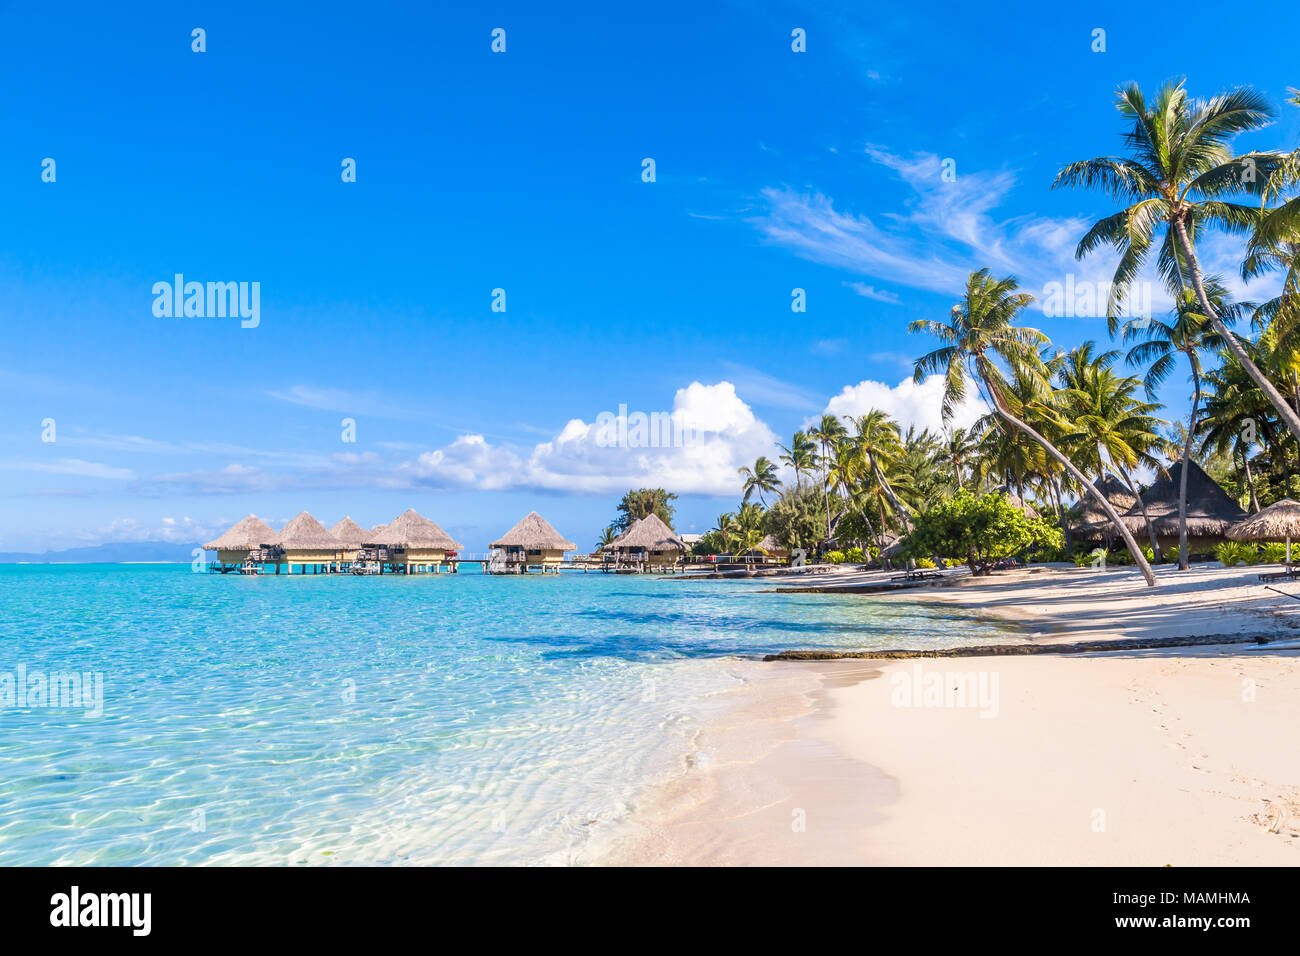 Bora Bora Island, French Polynesia. Stock Photo